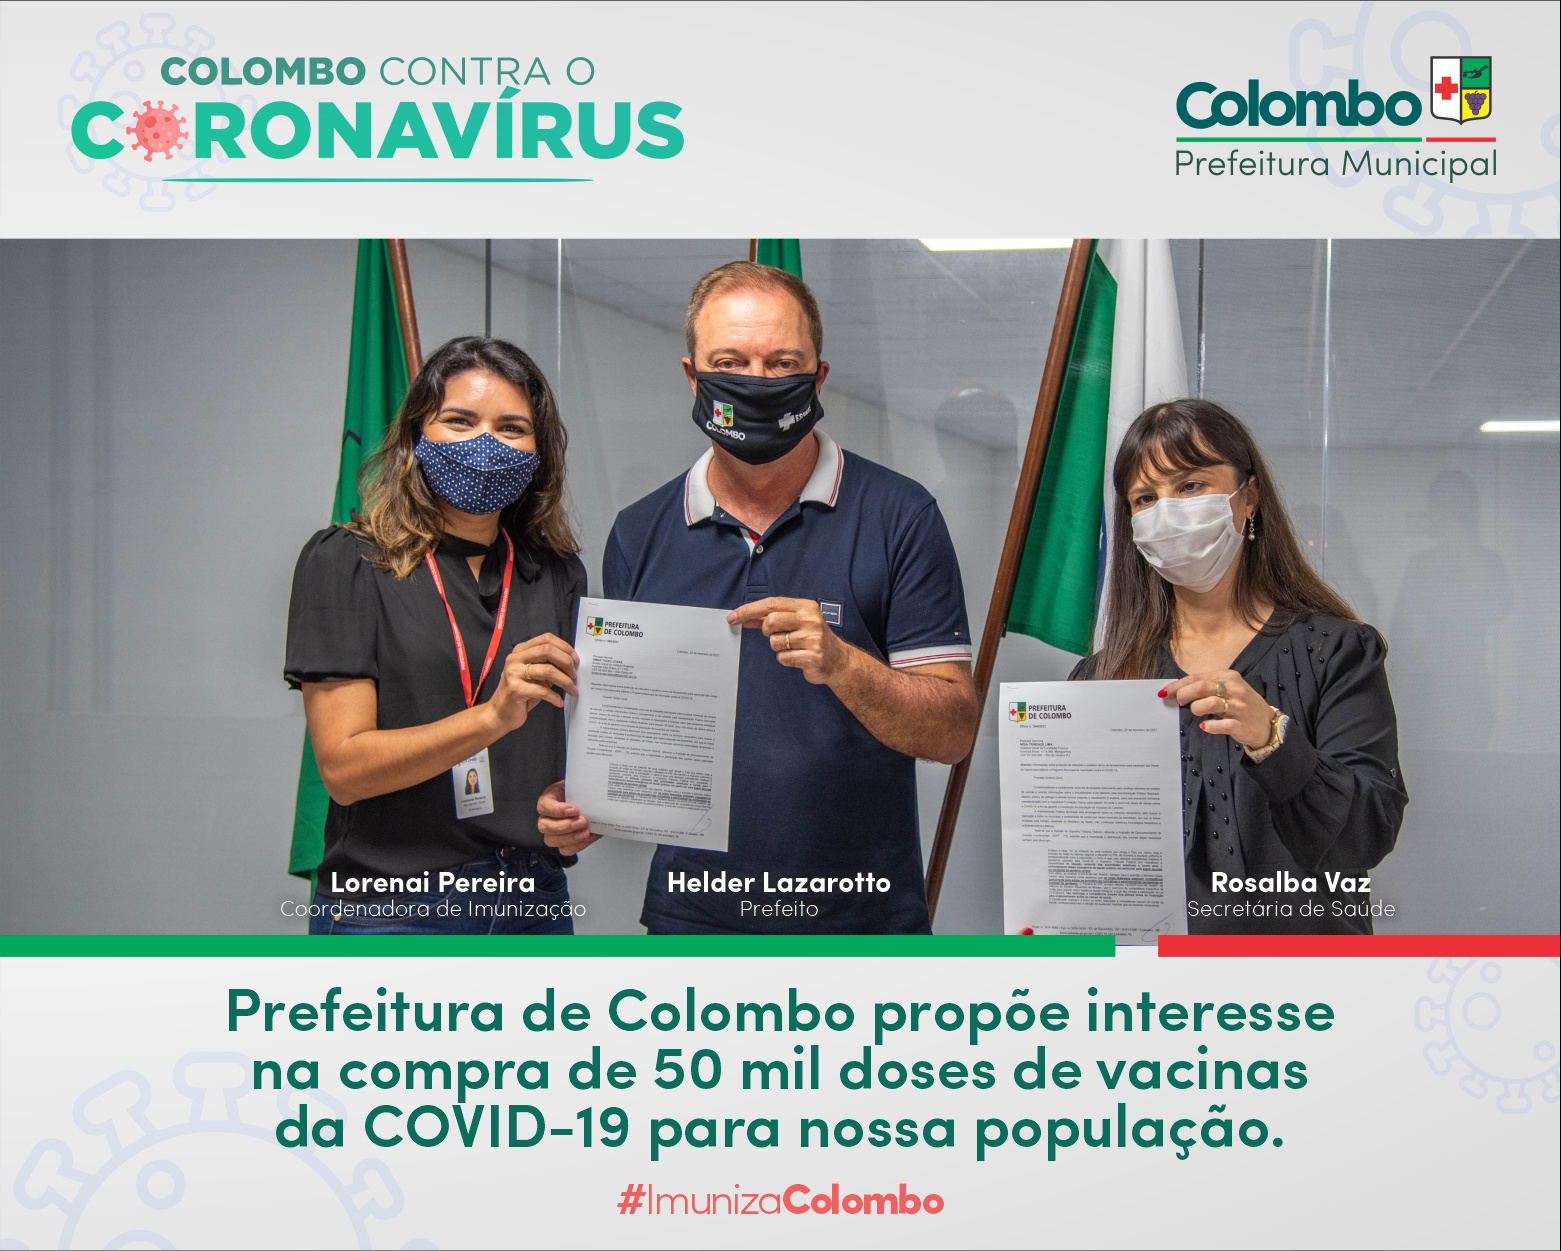 Colombo sinaliza intenção de compra de 50 mil doses de vacina contra a Covid-19